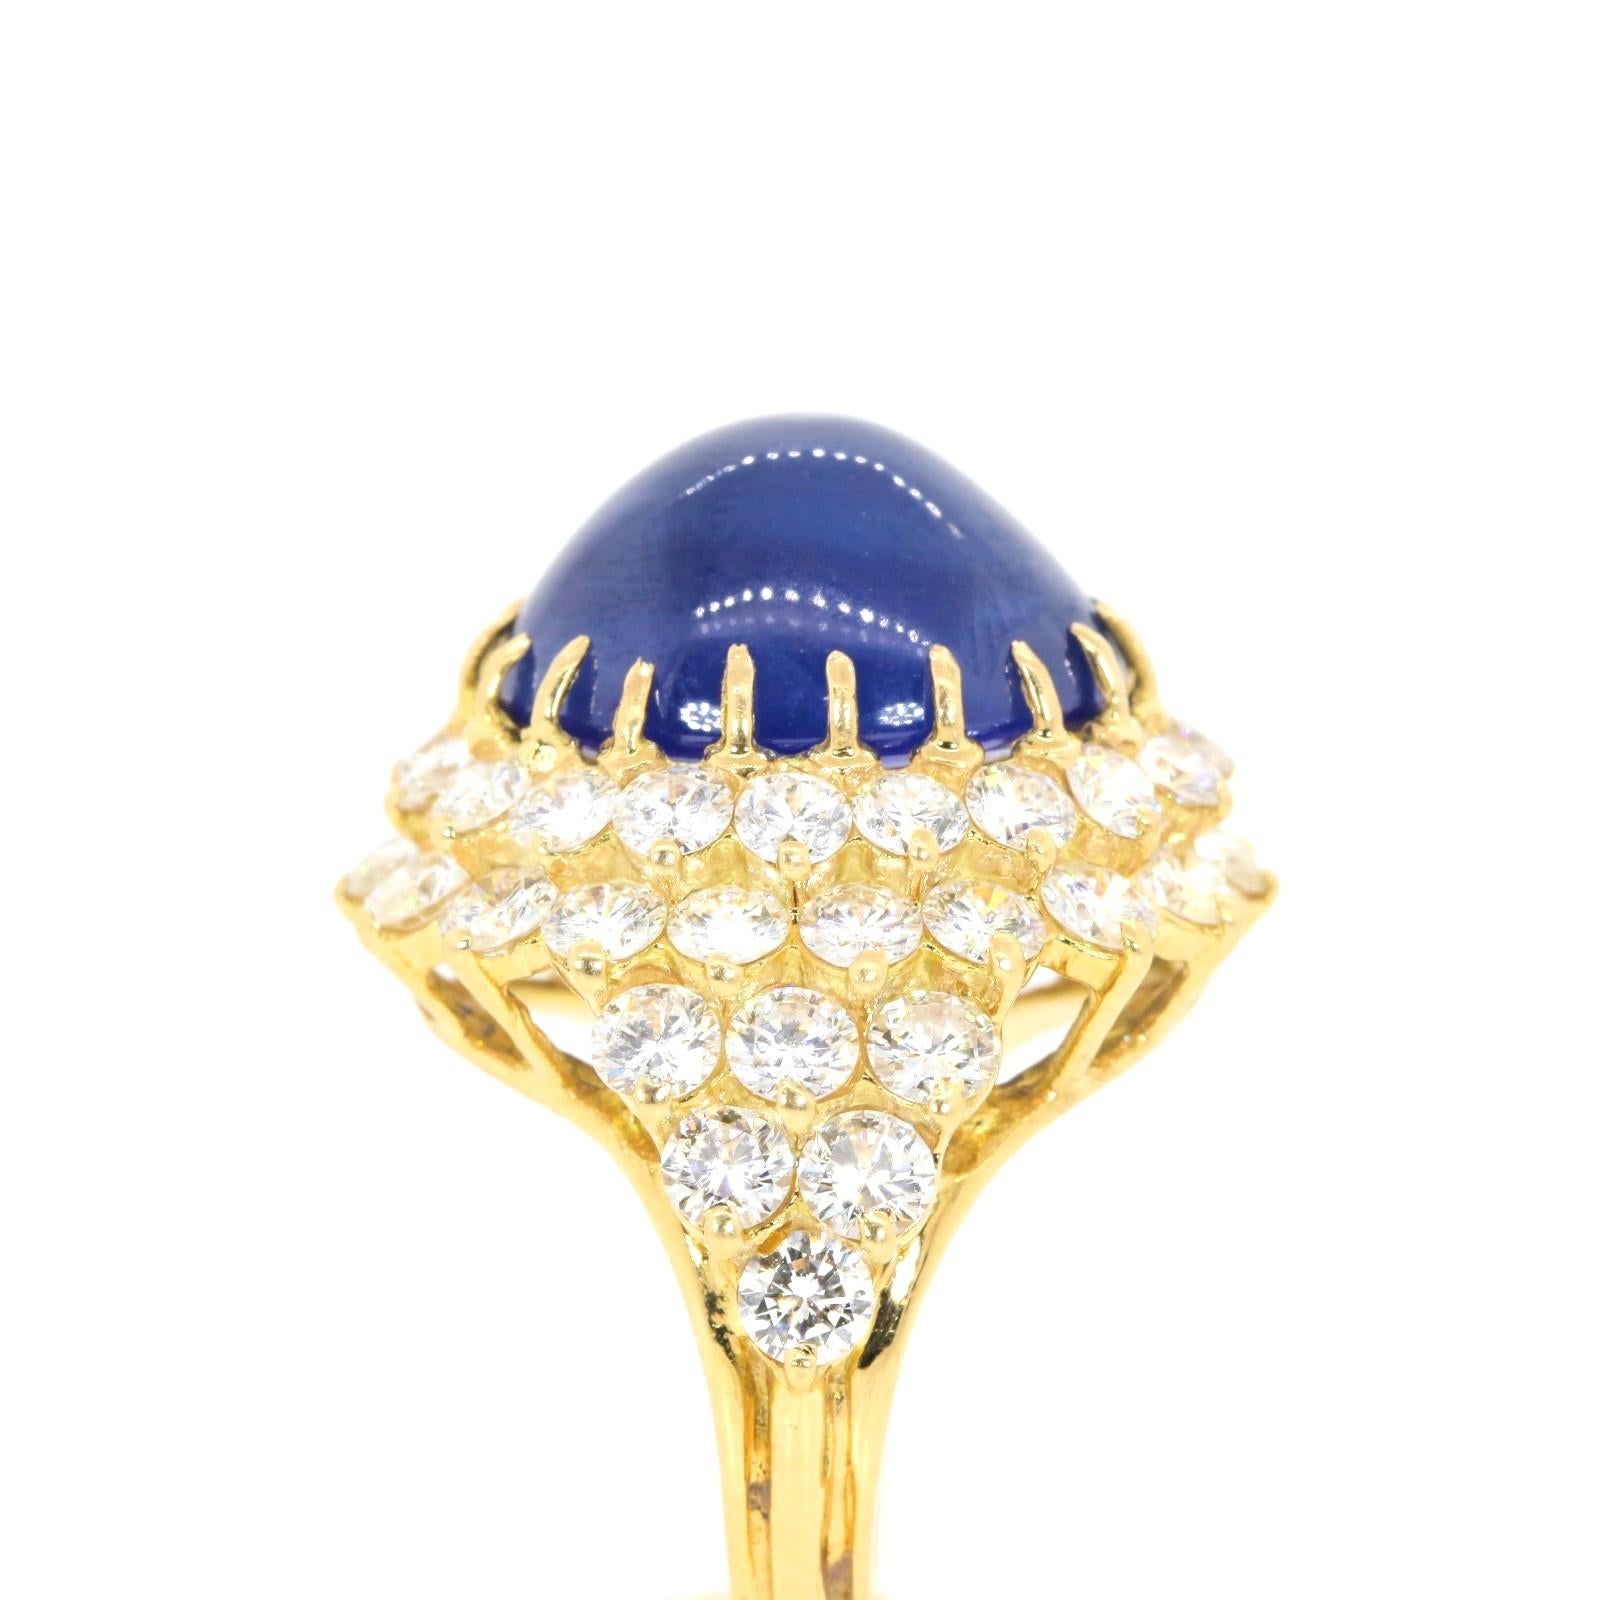 Oval Cut 15.74 Carat Ceylon Sapphire Diamond Gold Ring